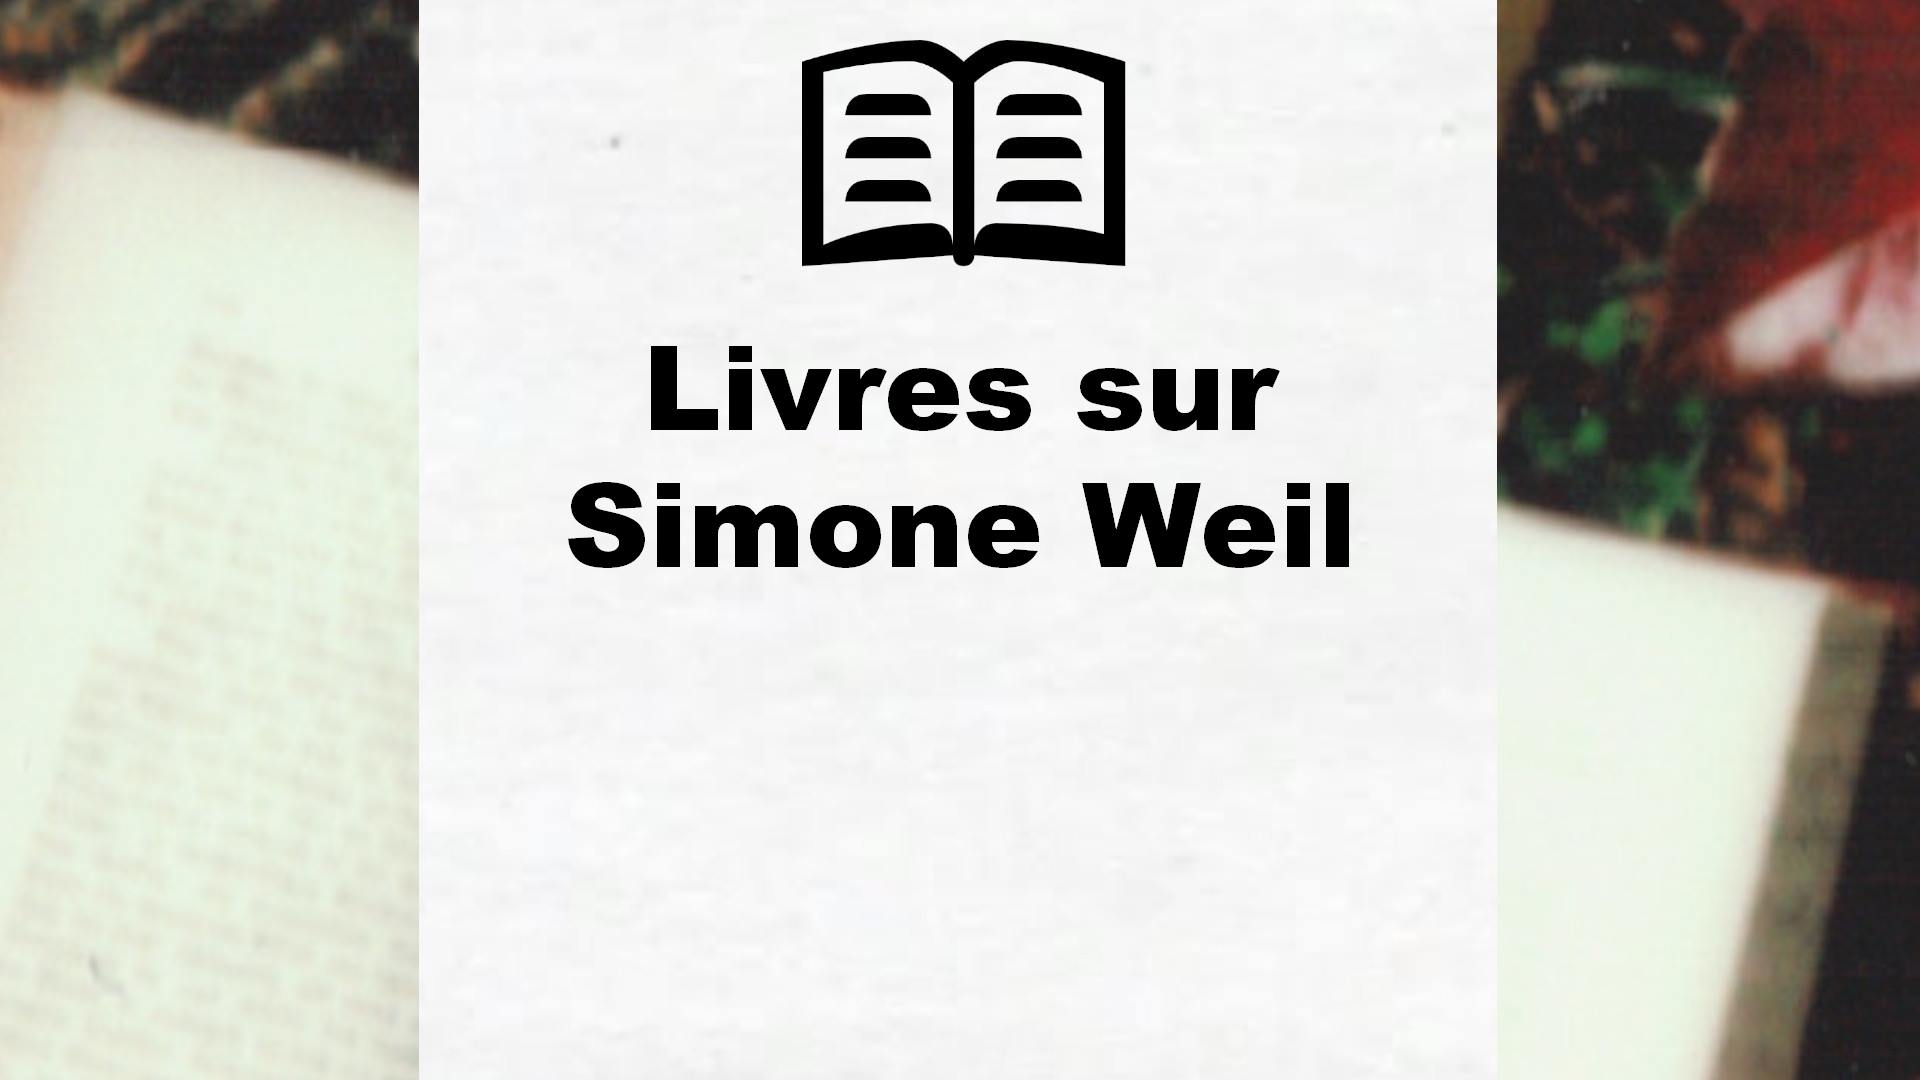 Livres sur Simone Weil